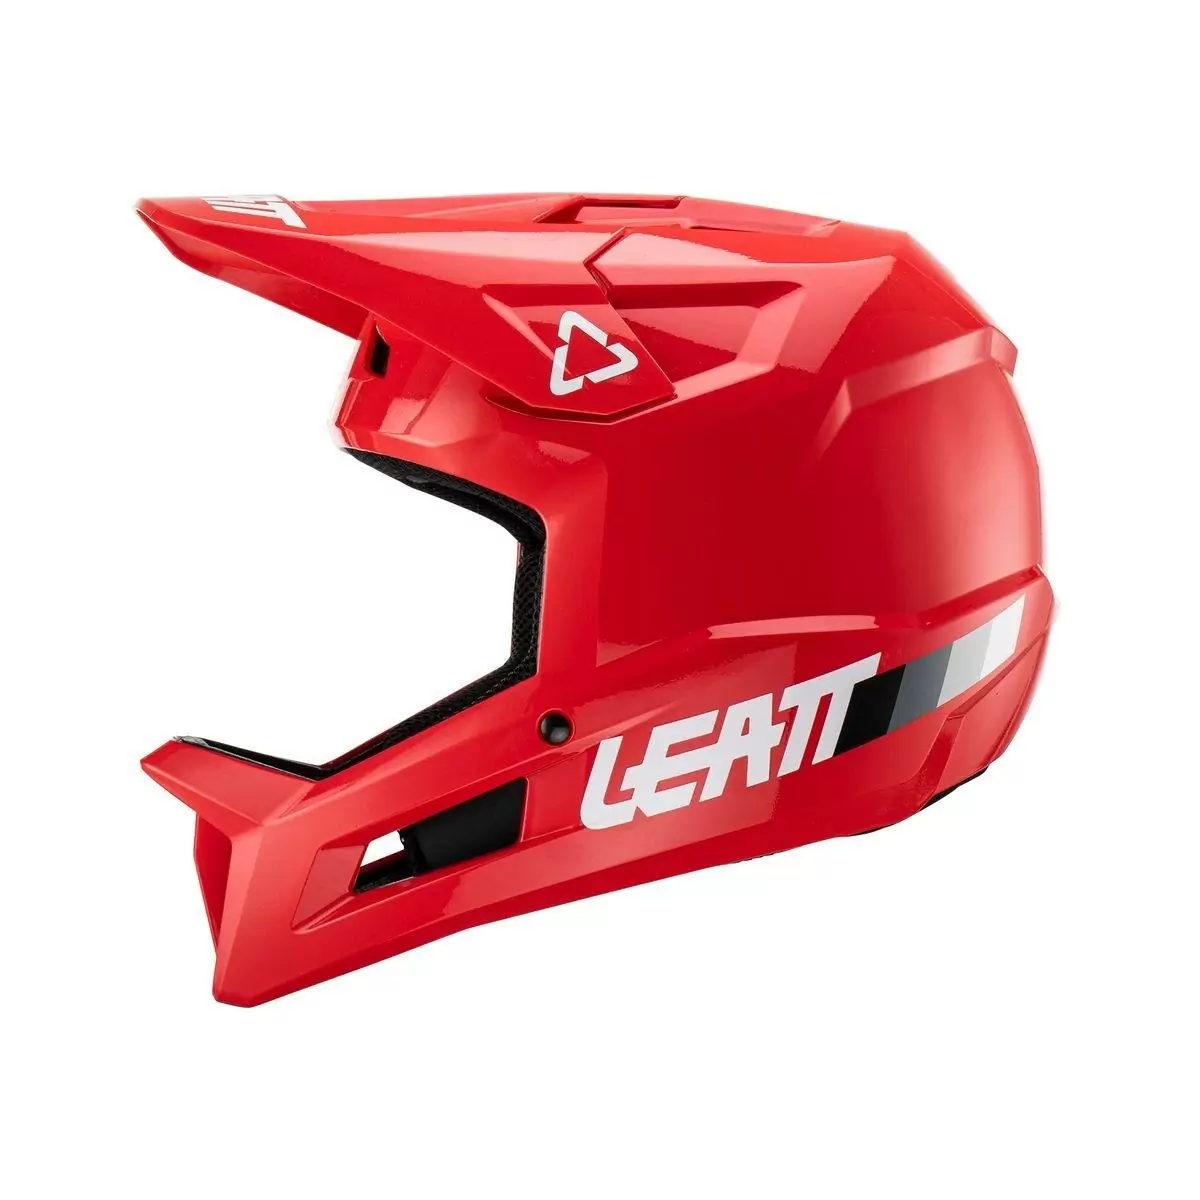 Gravity 1.0 MTB Fullface Helmet Red Size M (57-58cm) #1